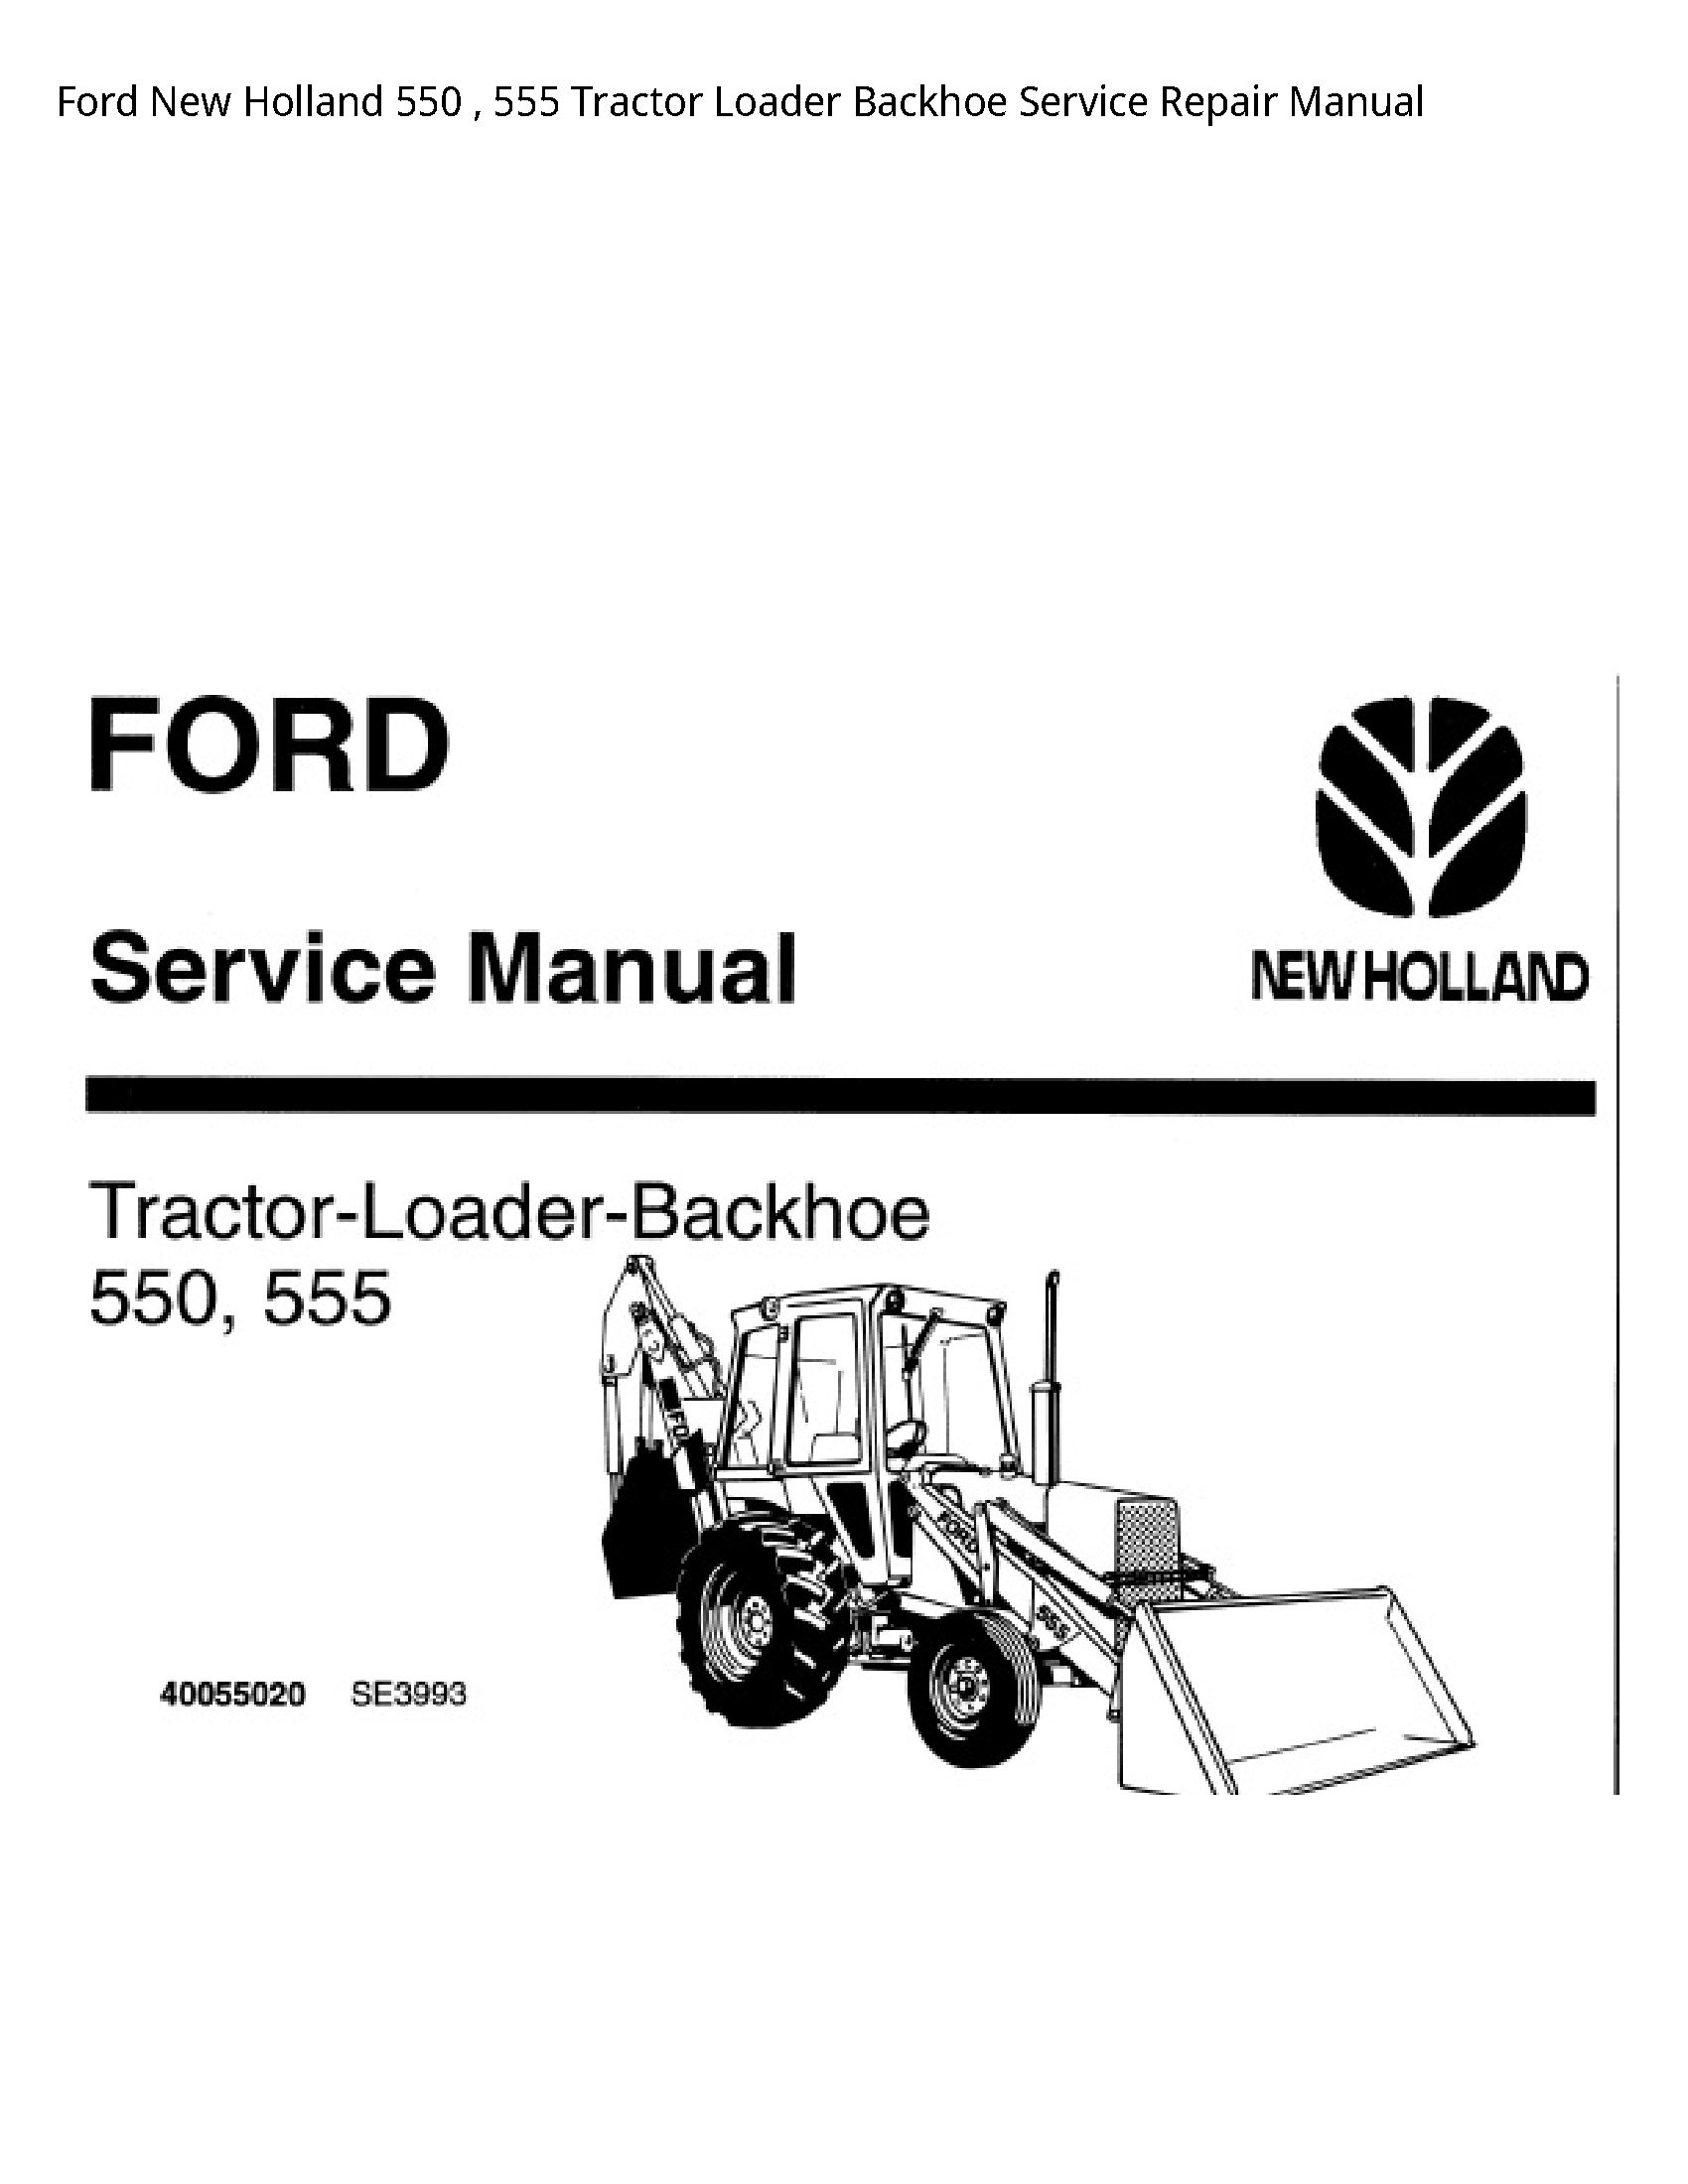  550 Tractor Loader Backhoe manual